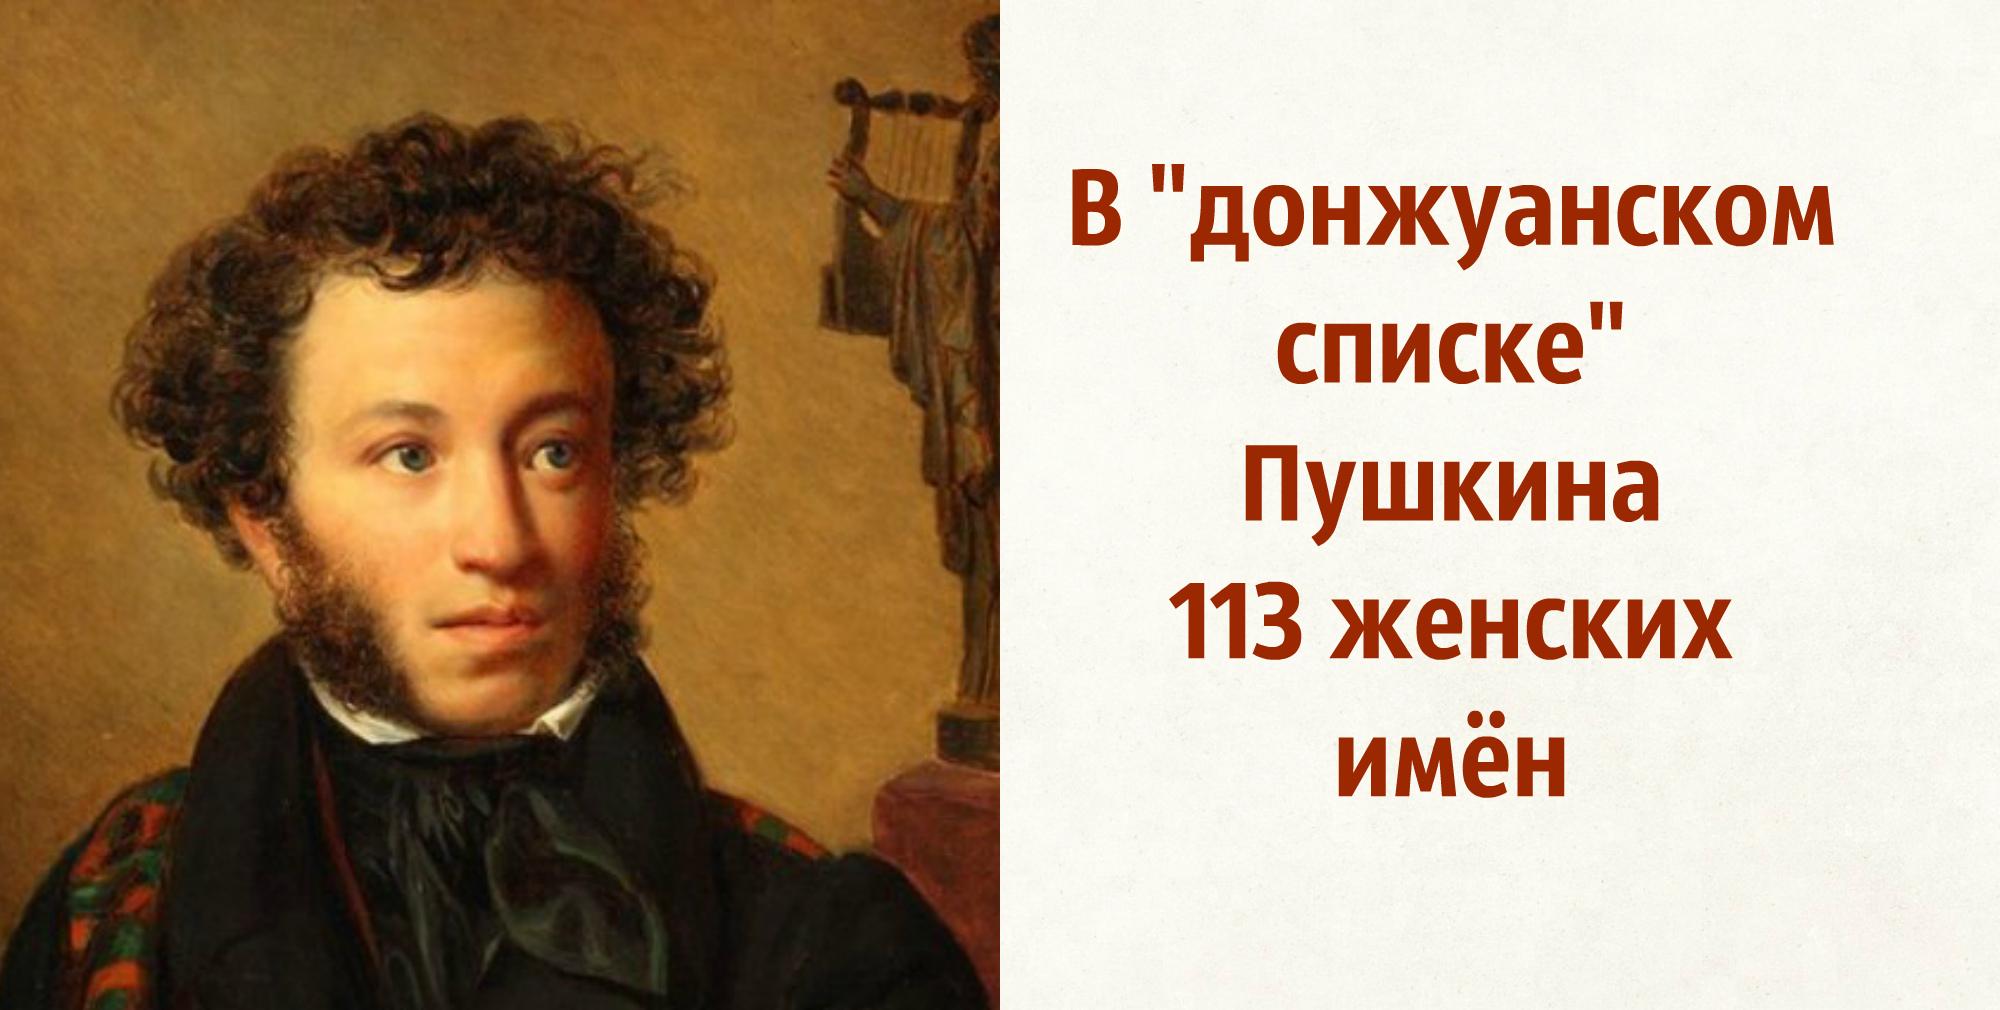 Факты о Пушкине